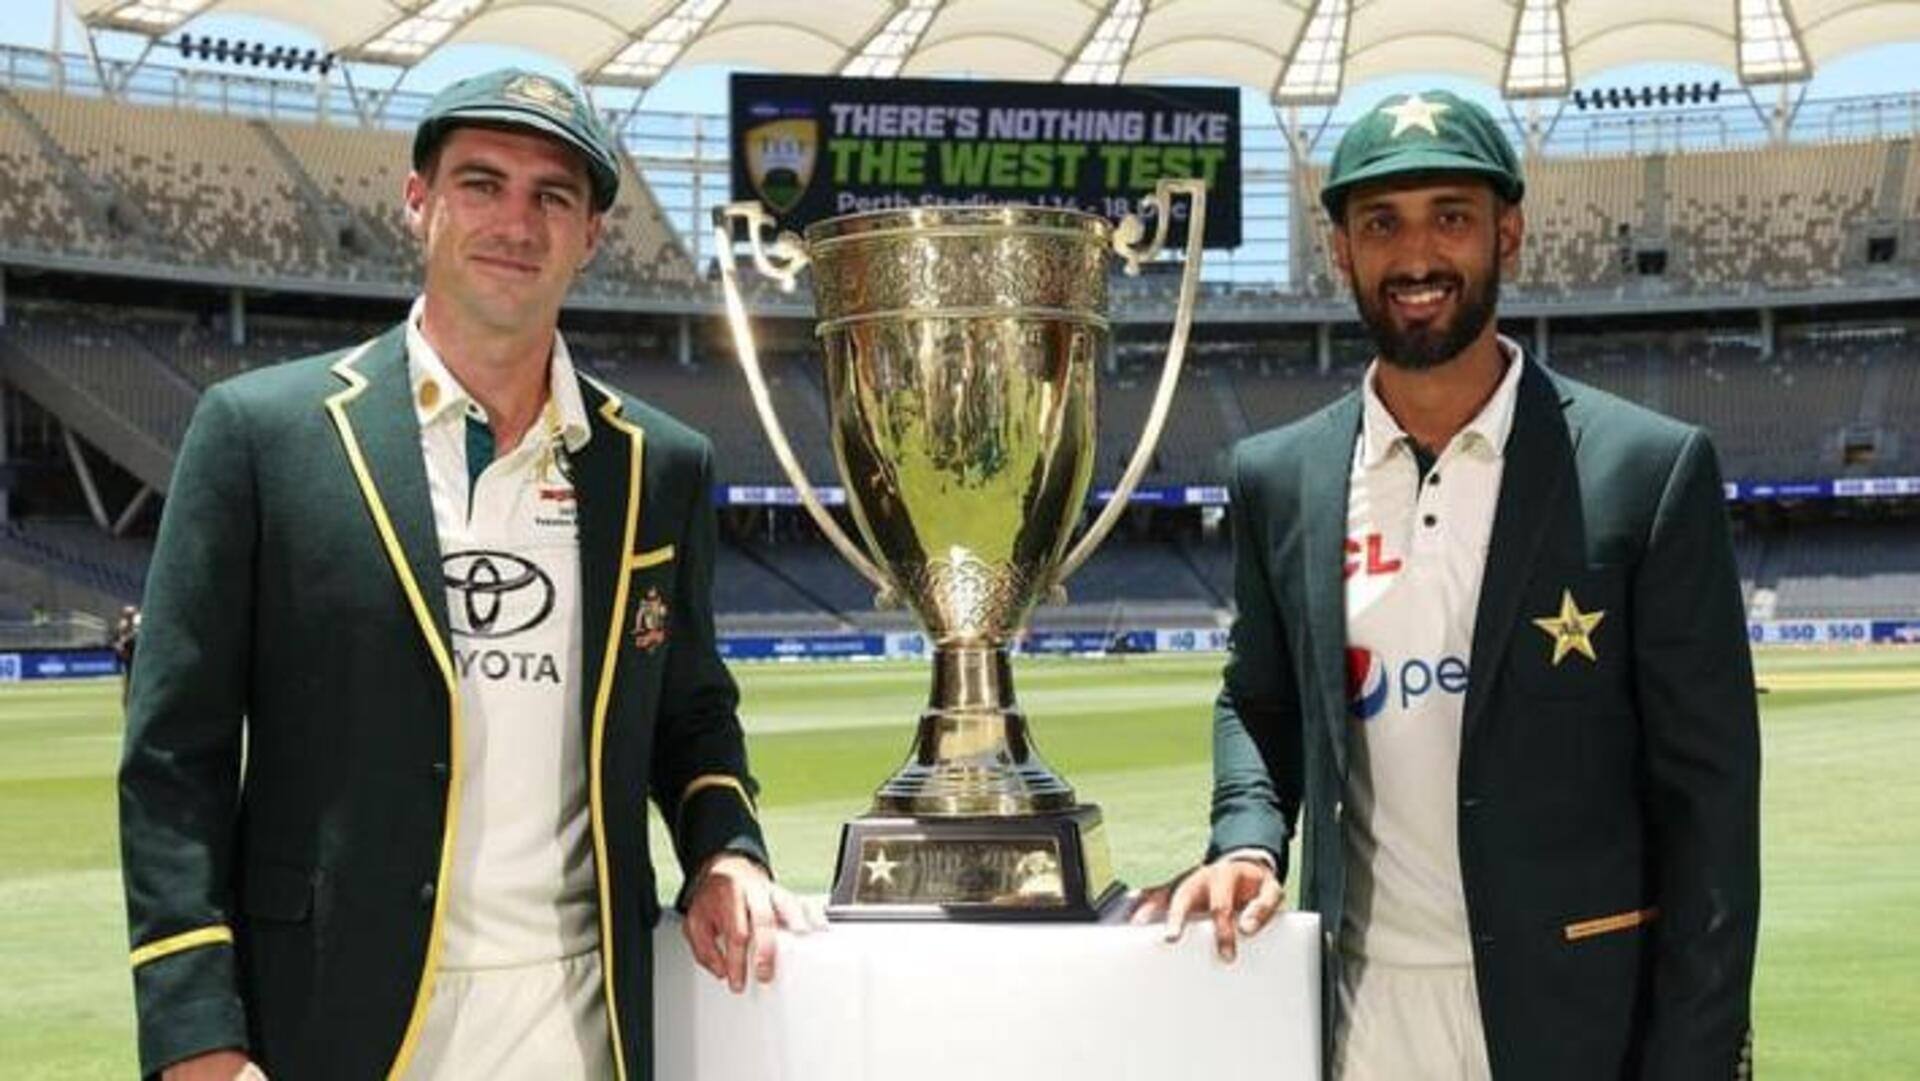 ऑस्ट्रेलिया और पाकिस्तान ने पहले टेस्ट के लिए की अपनी टीम घोषणा, ये खिलाड़ी करेंगे डेब्यू